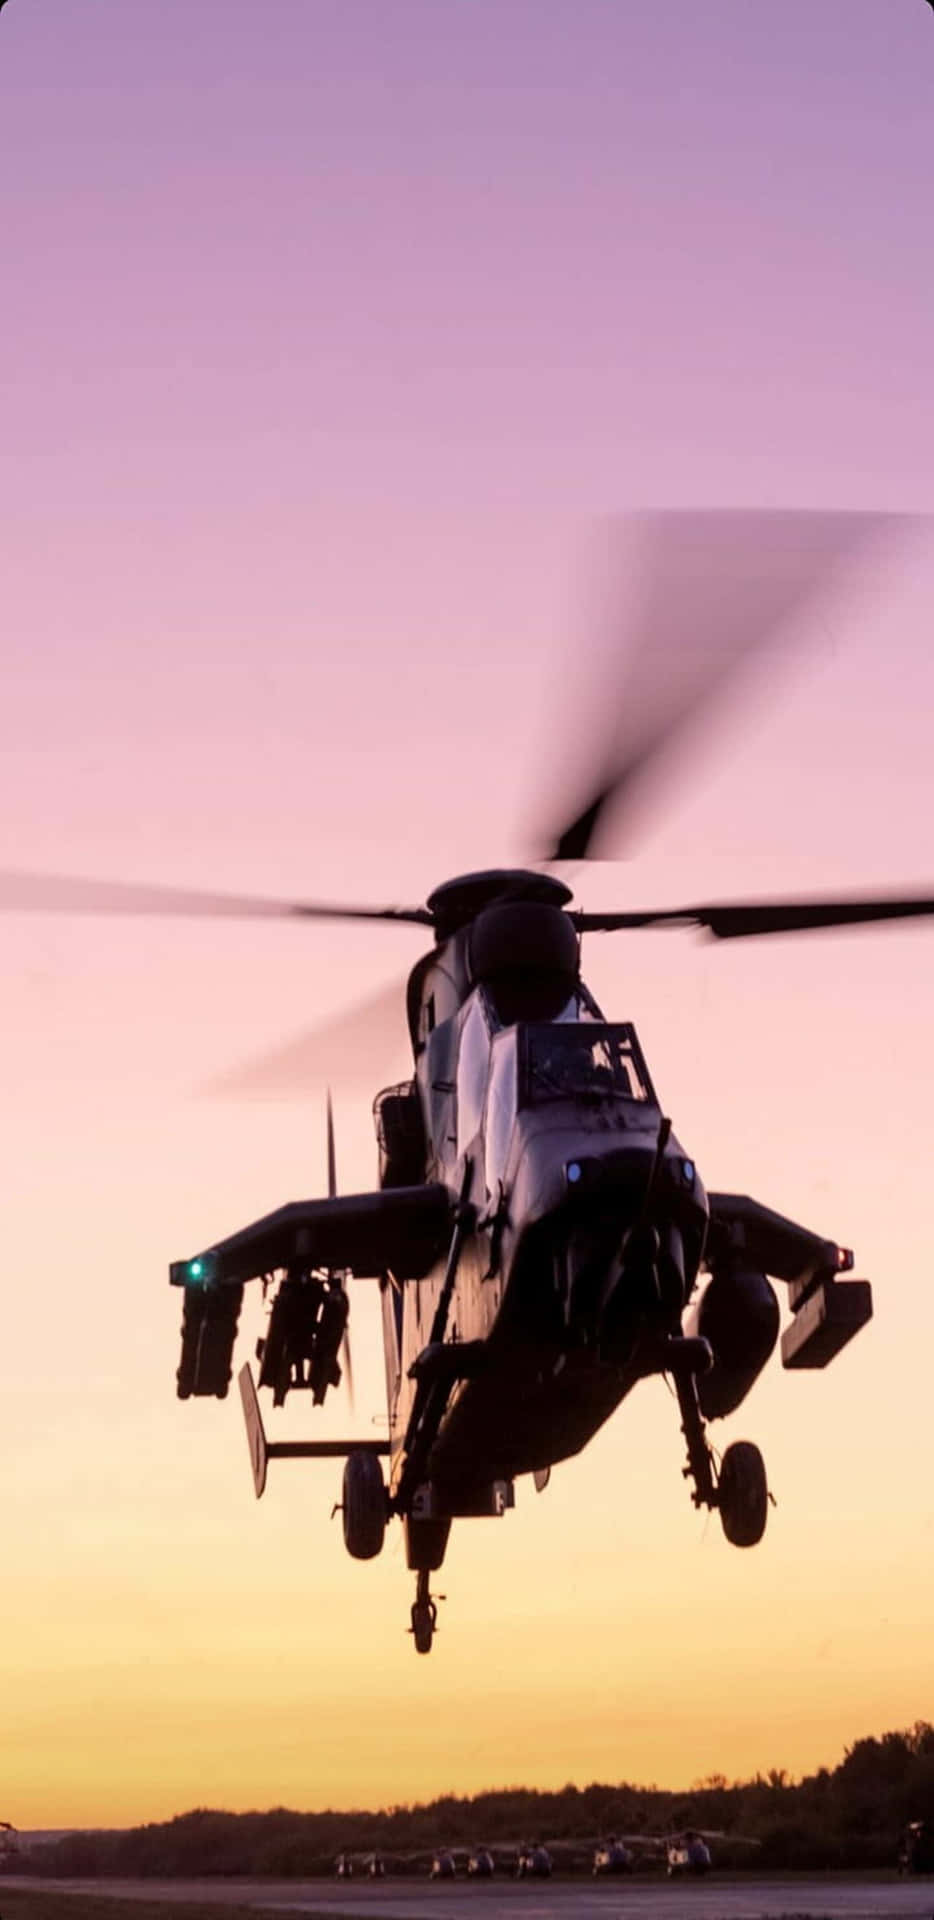 Pixel3xl Helikopter Hintergrund Eurocopter Tiger Sonnenuntergangsansicht